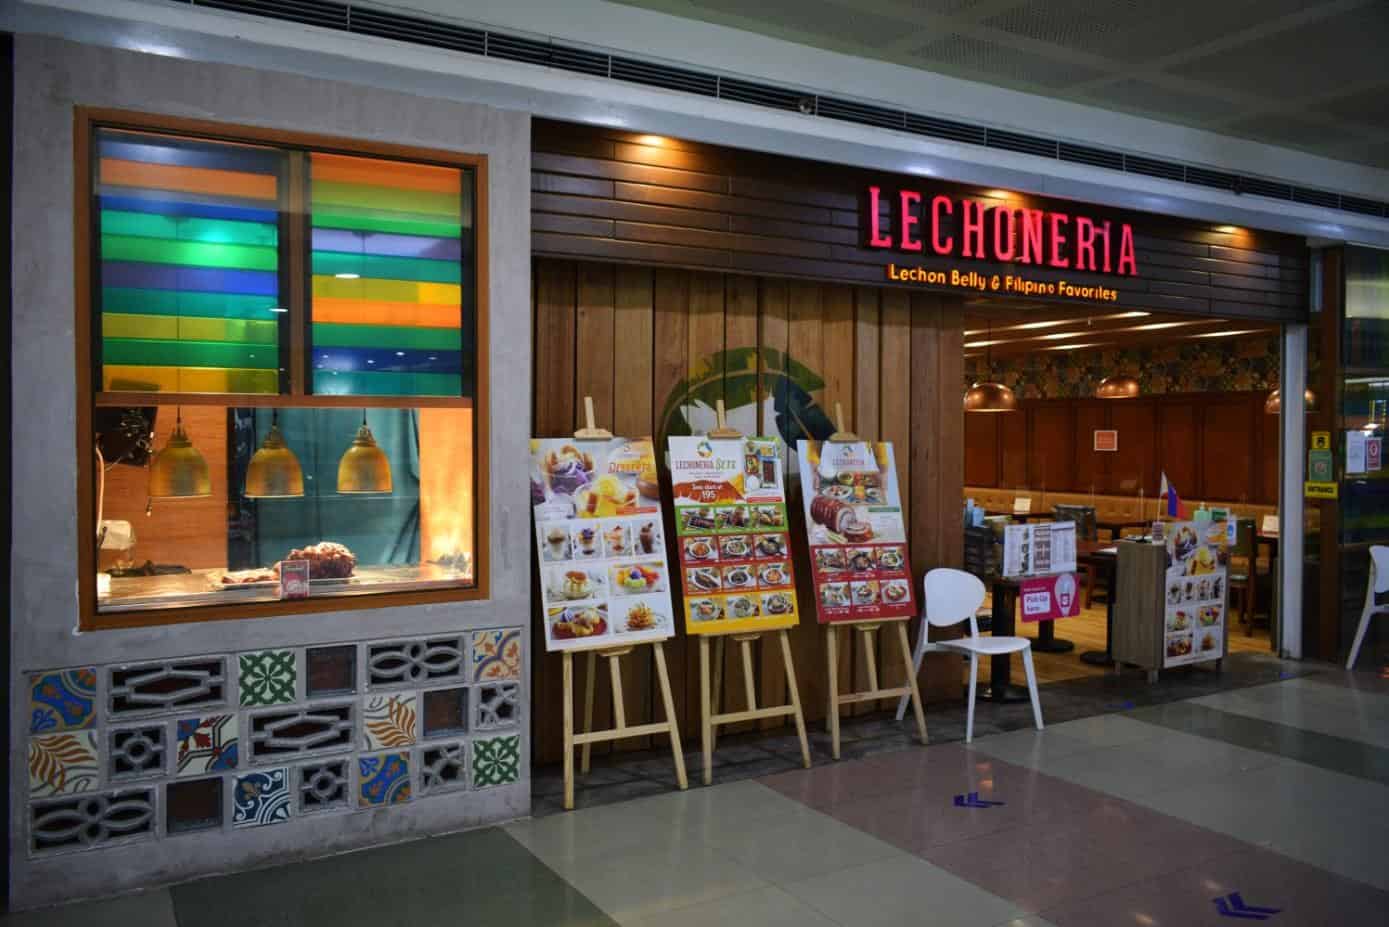 Filipino restaurants in moa - lechoneria